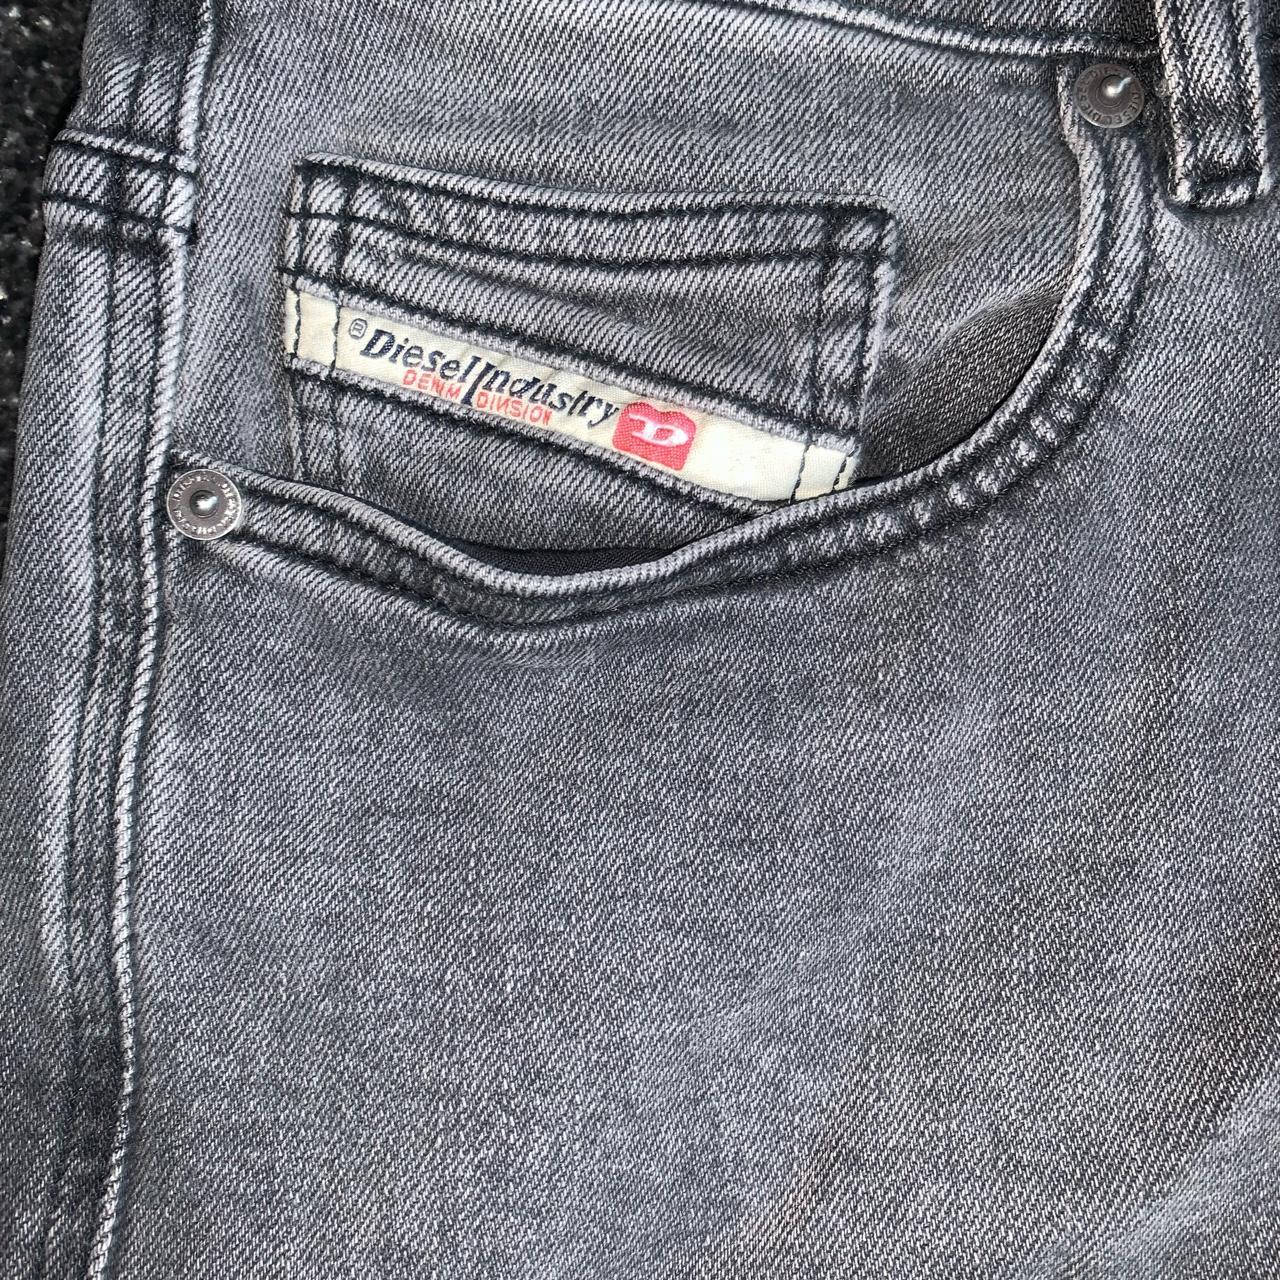 Diesel jeans 👖 relaxed fit 30w 32L #Diesel #jeans - Depop